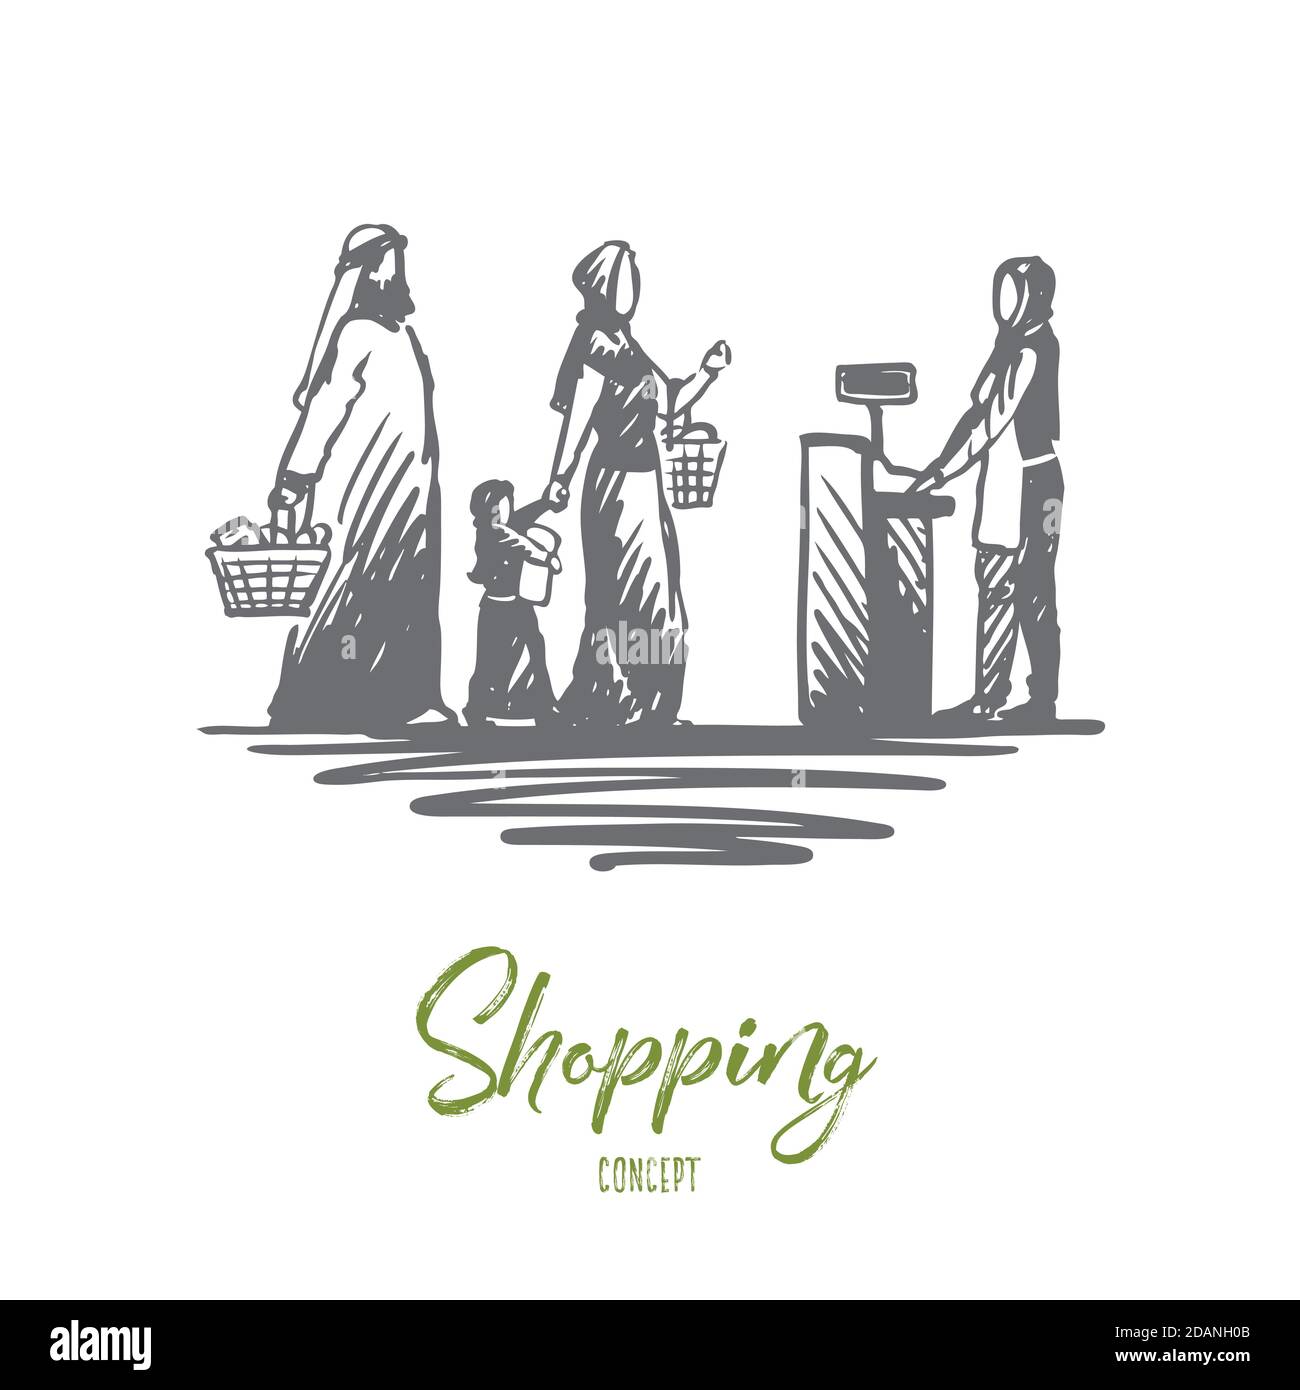 Shopping, acquisti, musulmano, concetto di famiglia. Vettore isolato disegnato a mano. Illustrazione Vettoriale